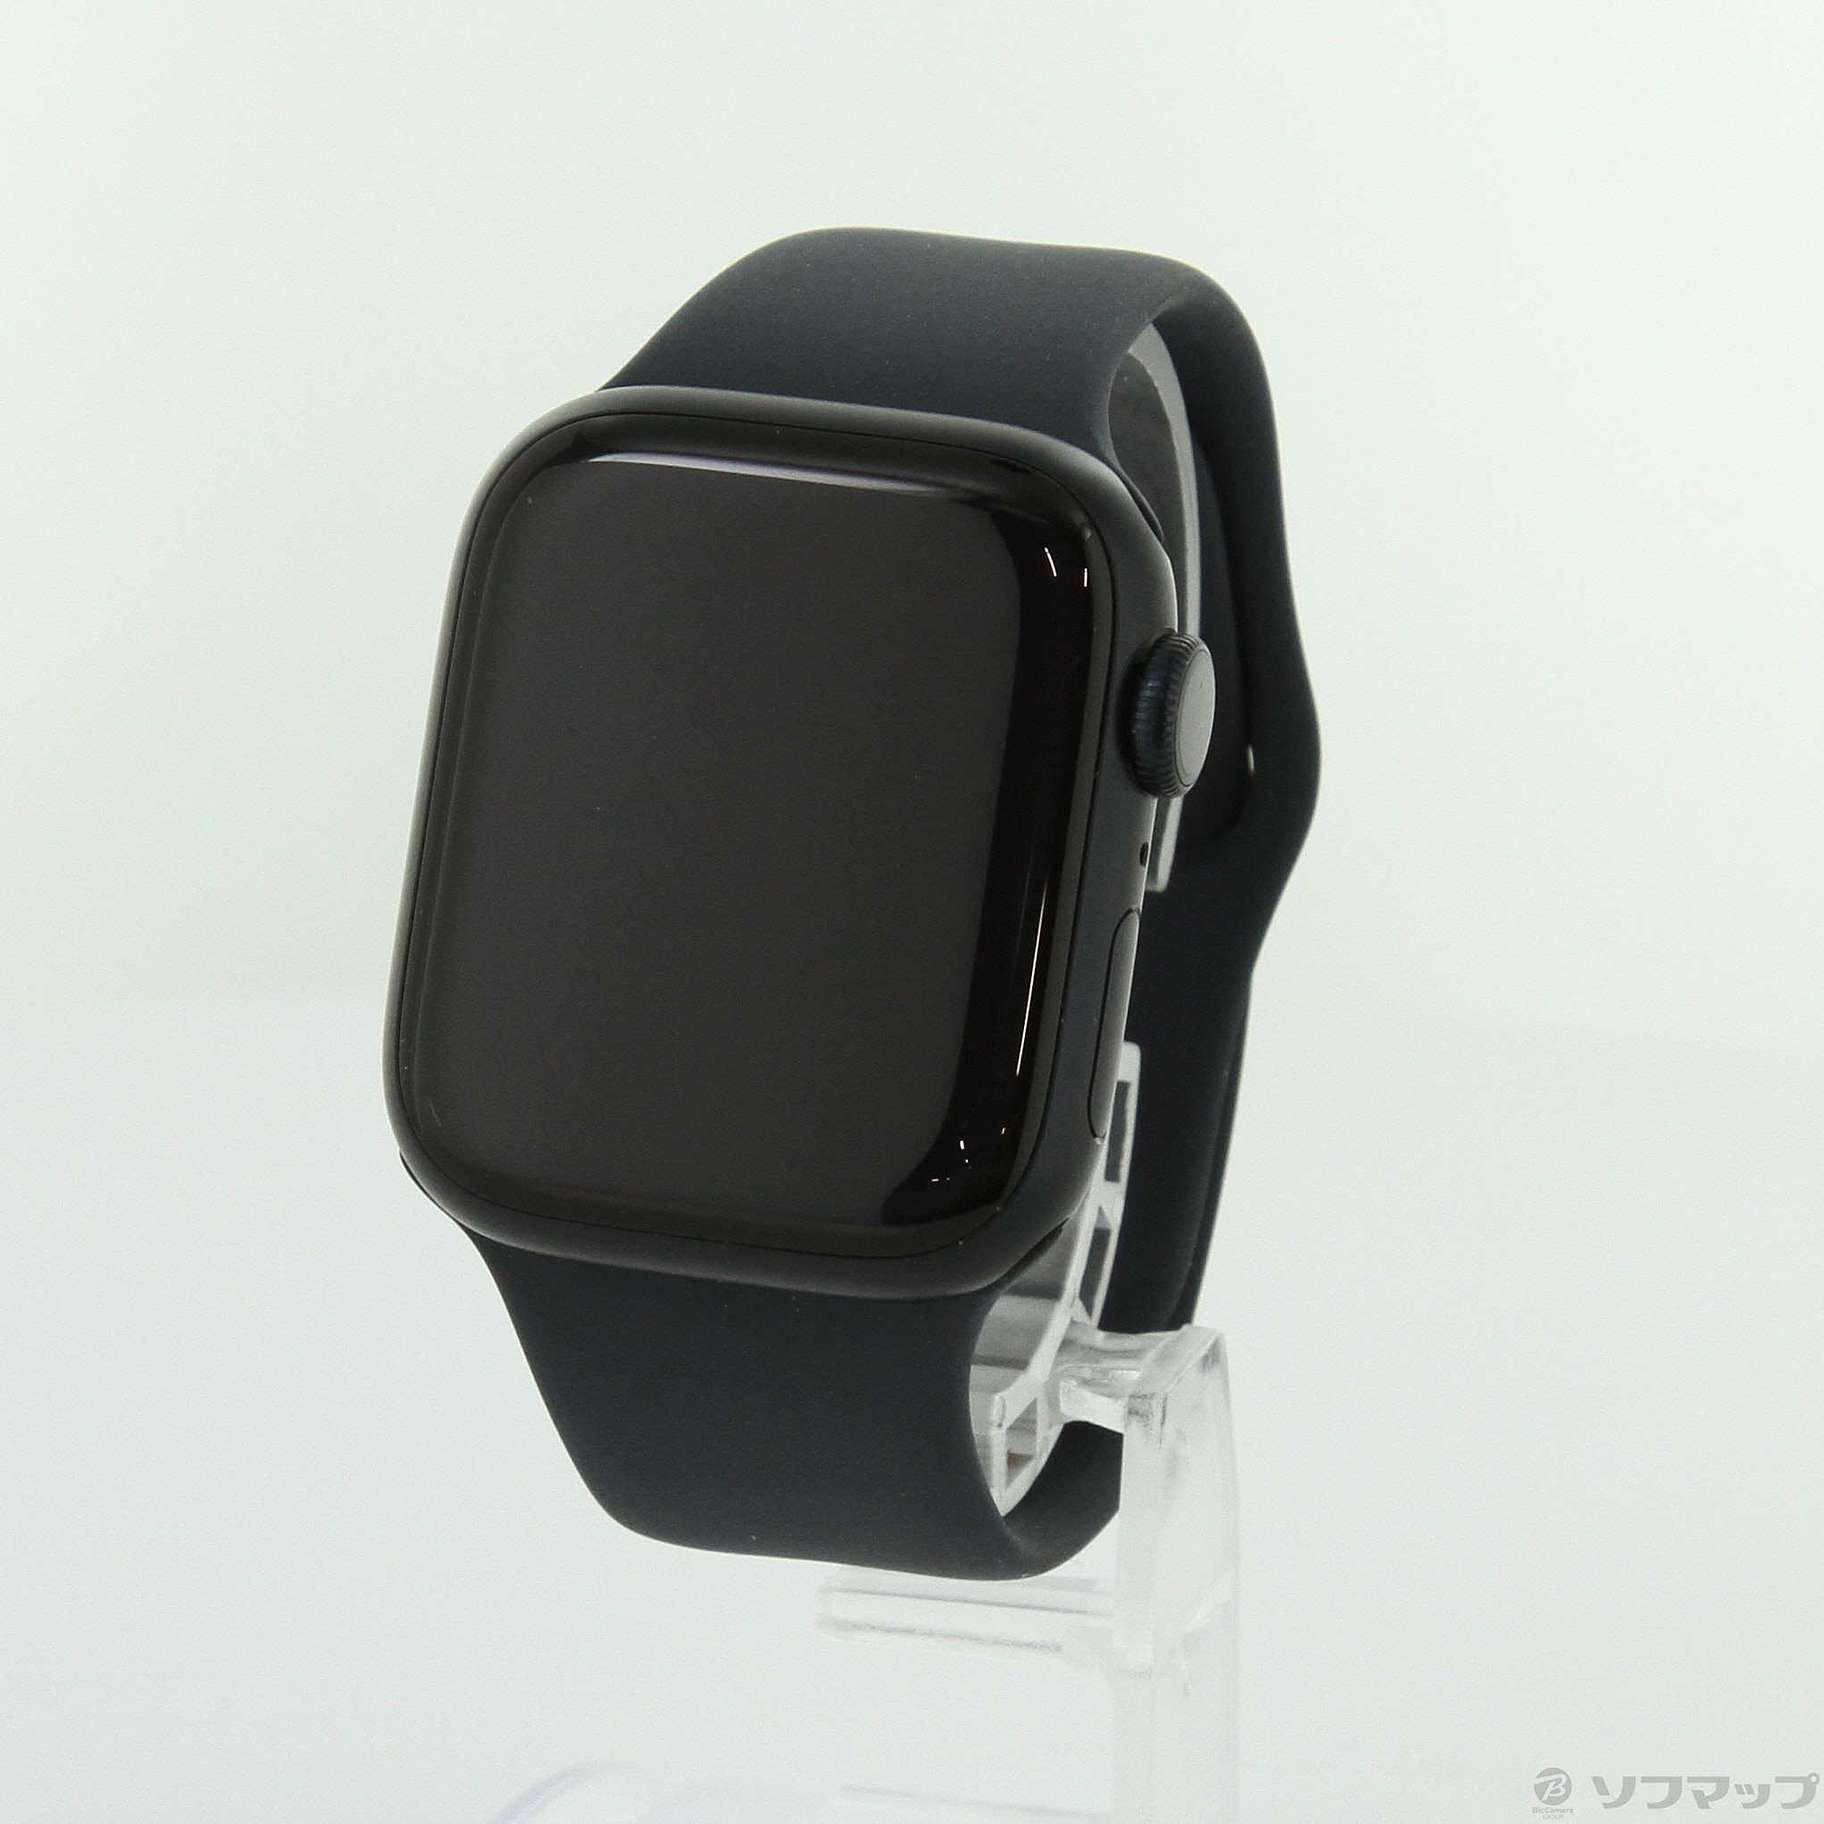 Apple Watch 8 (Cellular)41mmミッドナイトアルミニウム